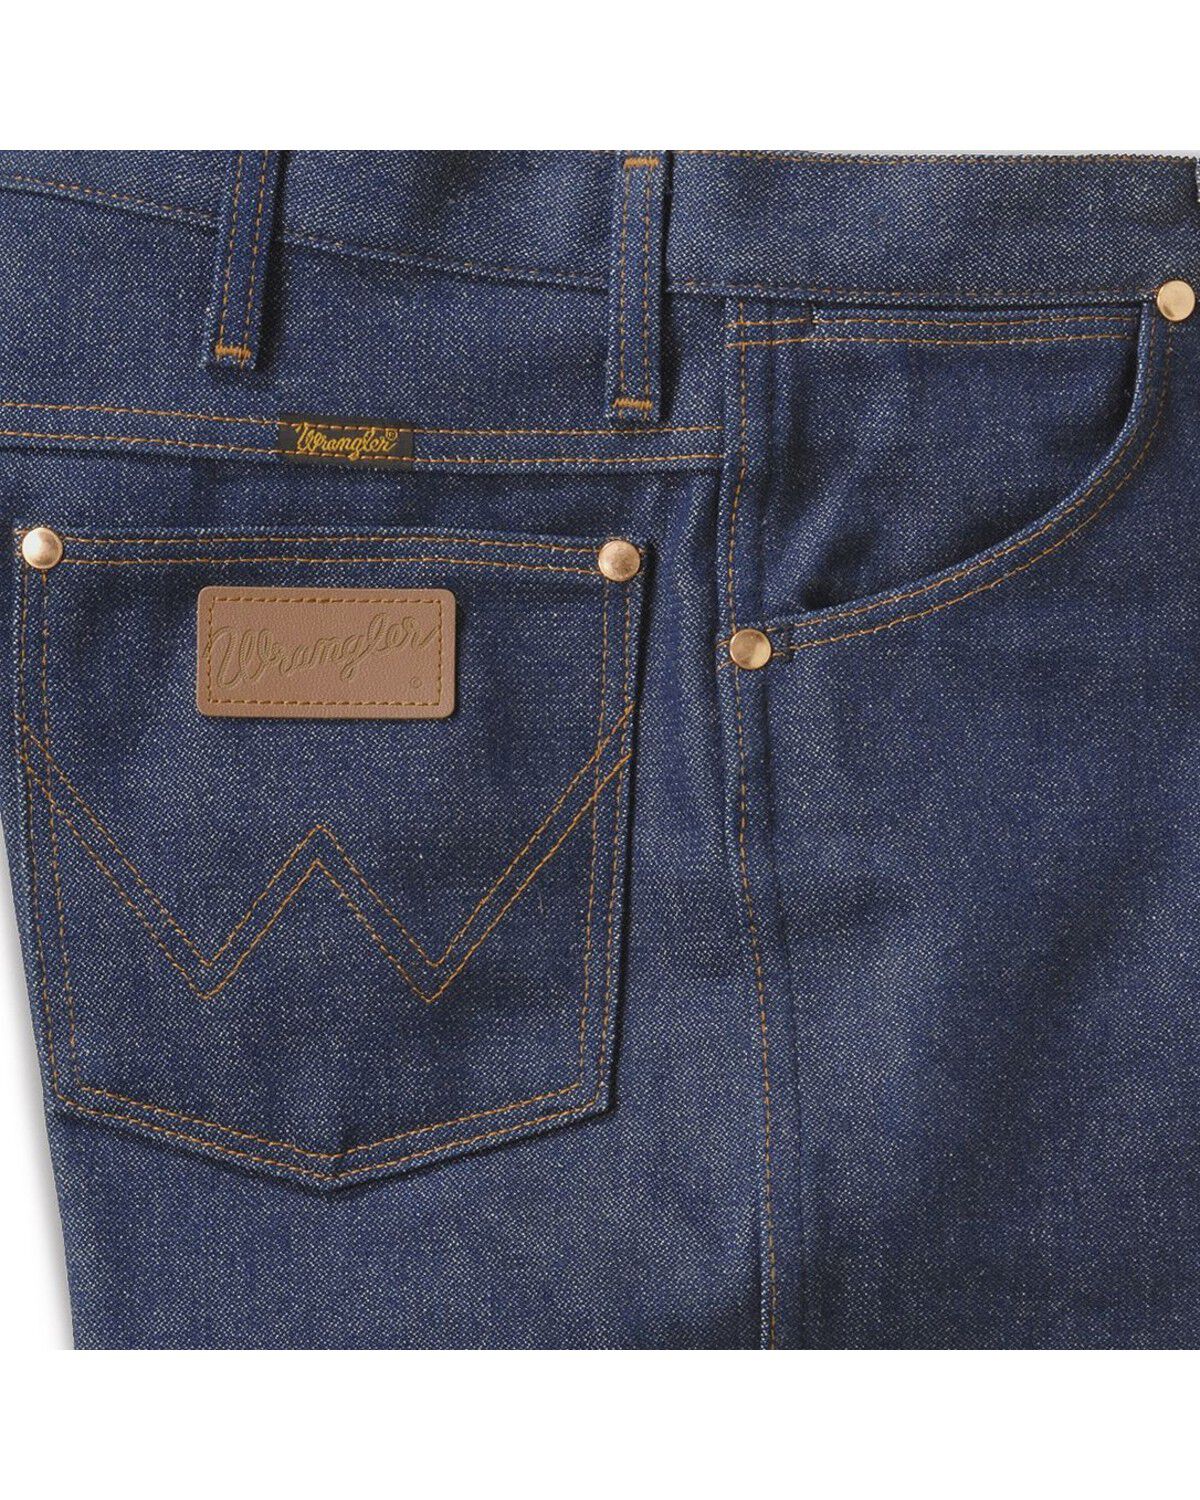 13mwzpw wrangler jeans